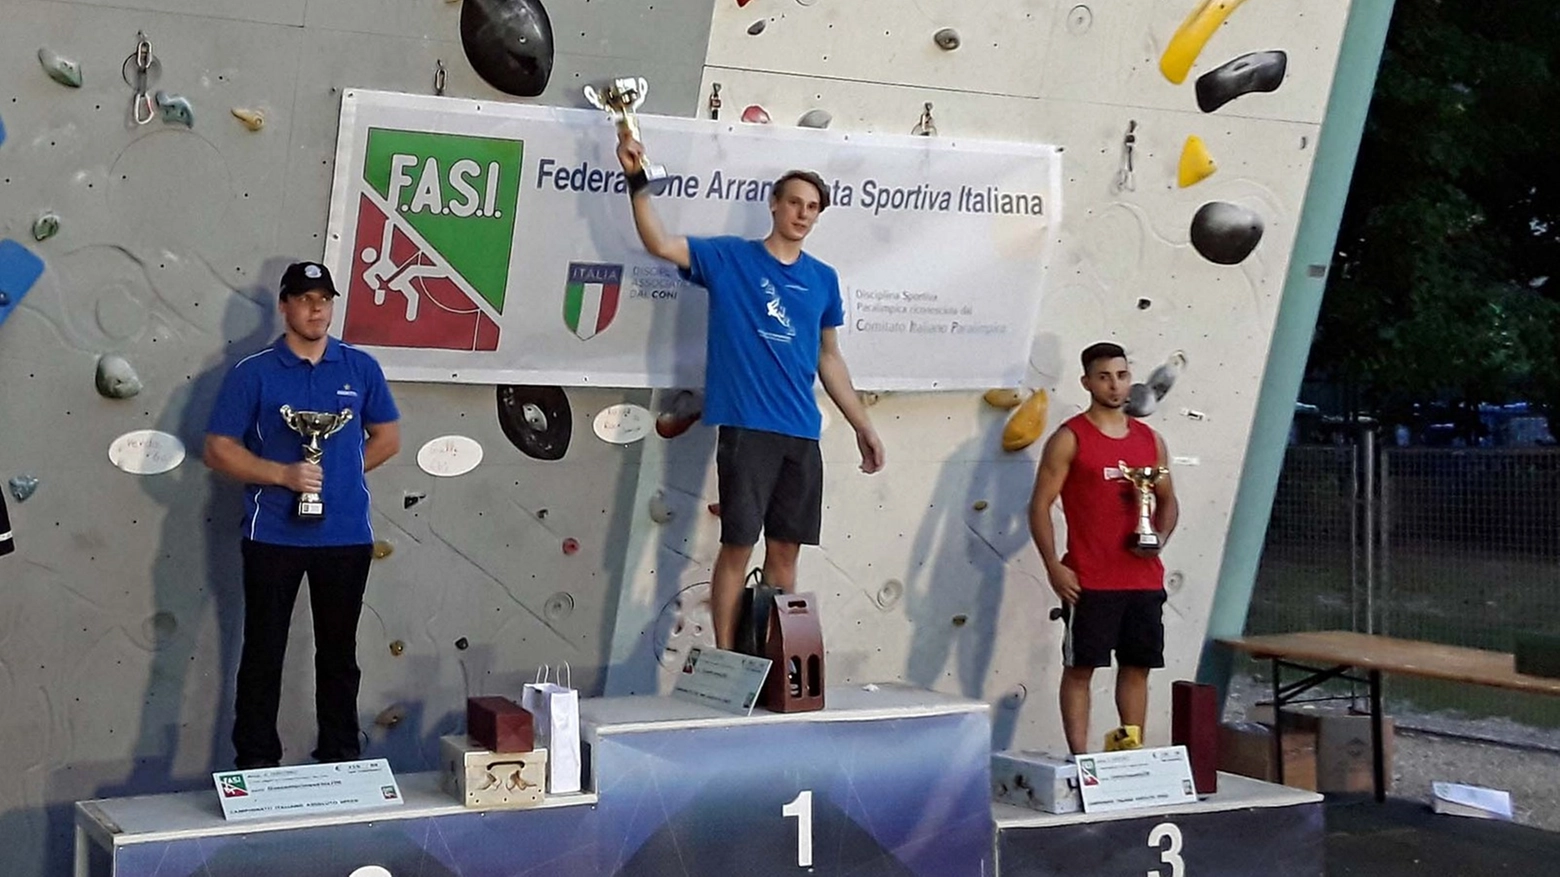 Sul podio al primo posto Ludovico Fossali